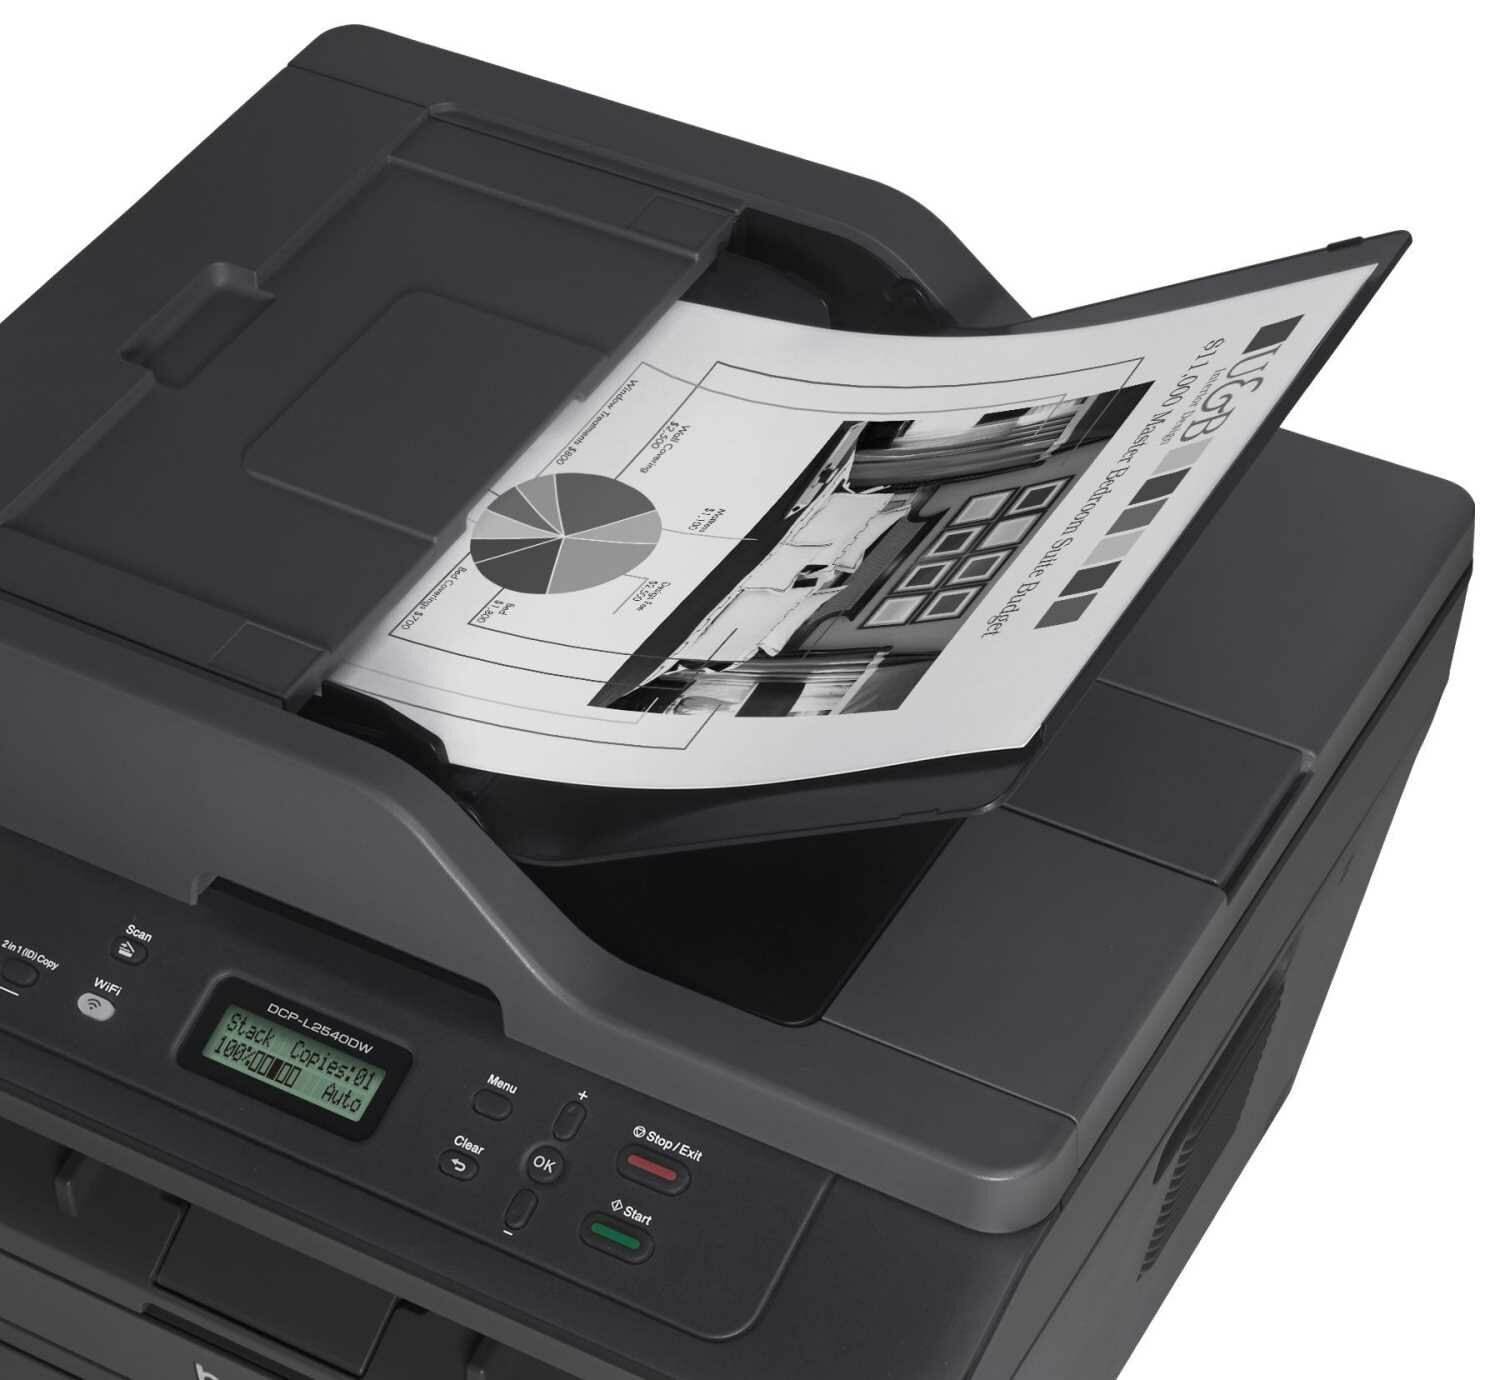 МФУ Brother DCP-L2540DW Лазерный принтер двусторонняя печать автоподатчик цветной сканер WI-fi вай фай русский язык